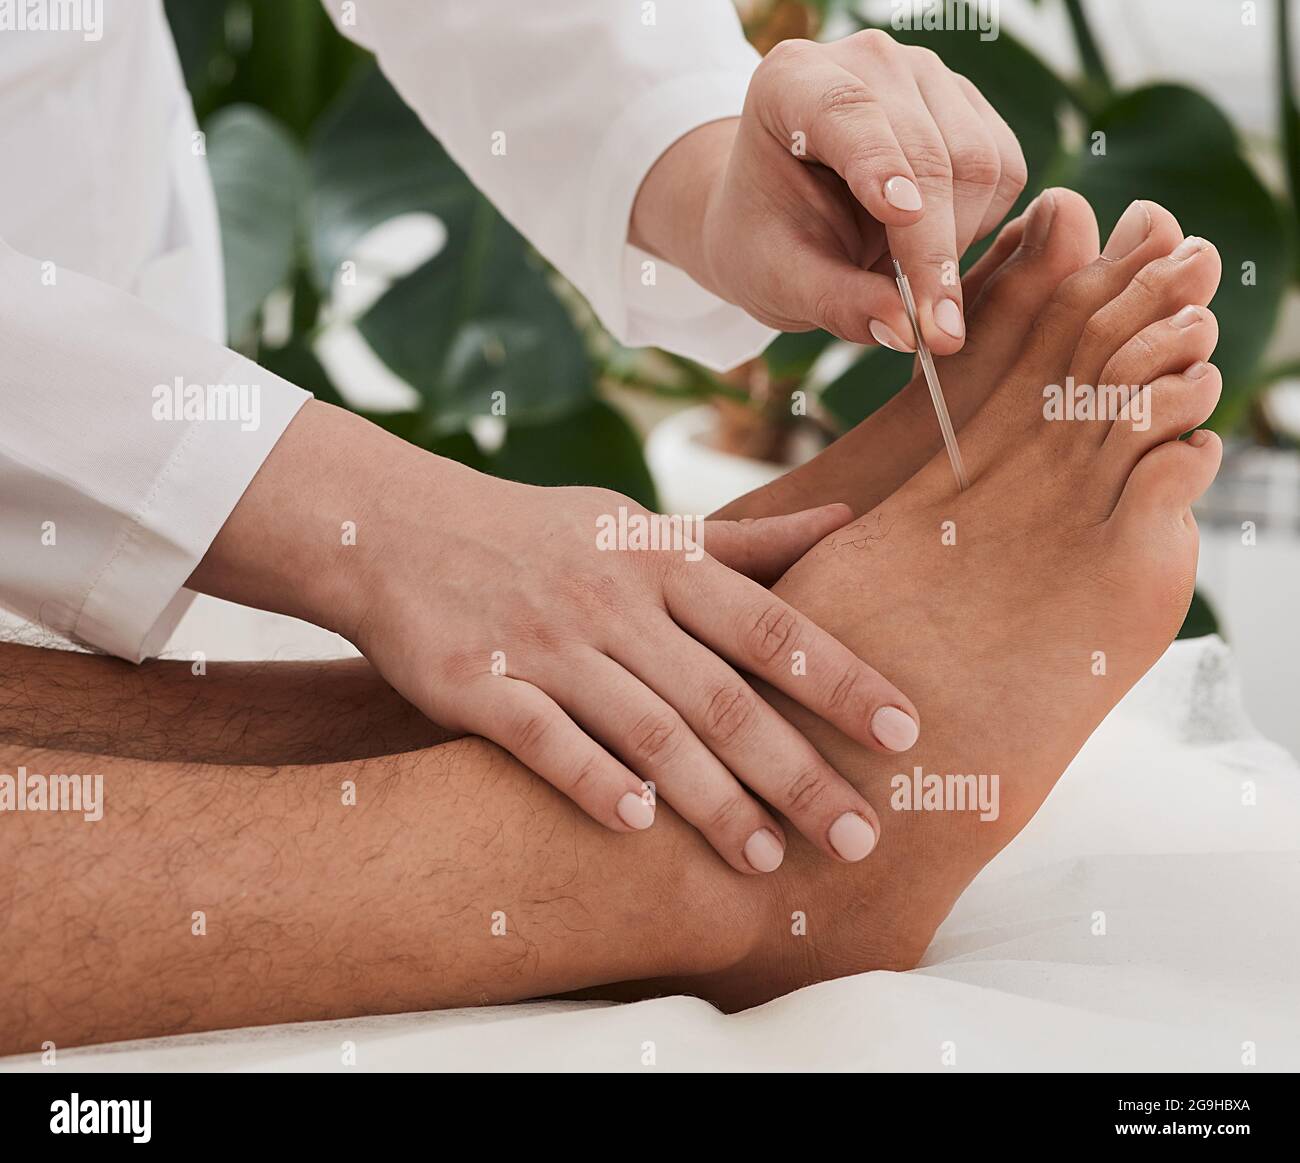 Traitement d'acupuncture pour les douleurs chroniques au pied.  Chiropraticien faisant acupuncture thérapie pour les pieds de patient avec  des aiguilles. Réflexologie Photo Stock - Alamy